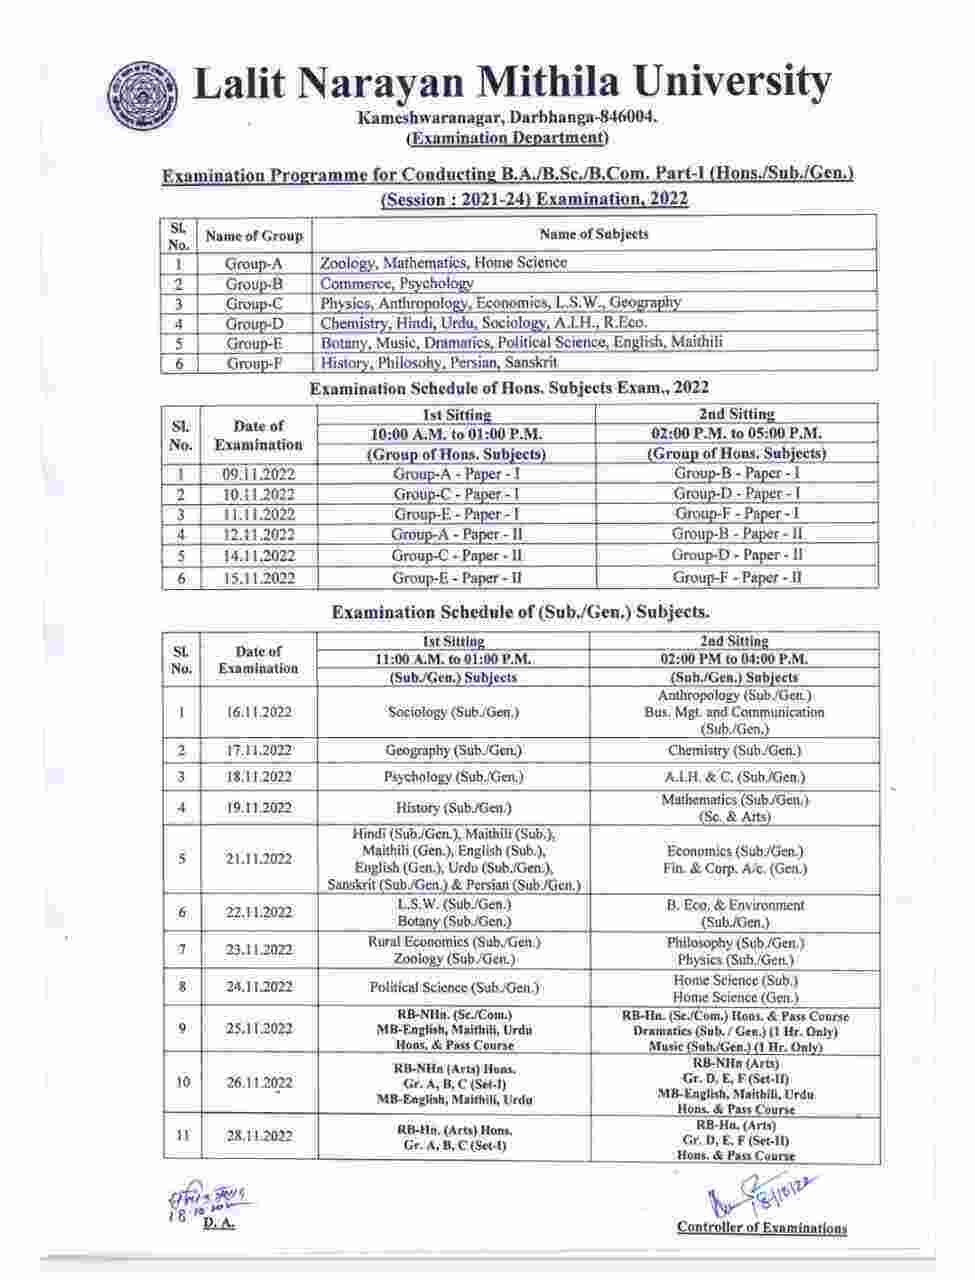 rsz lnmu part 1 schedule